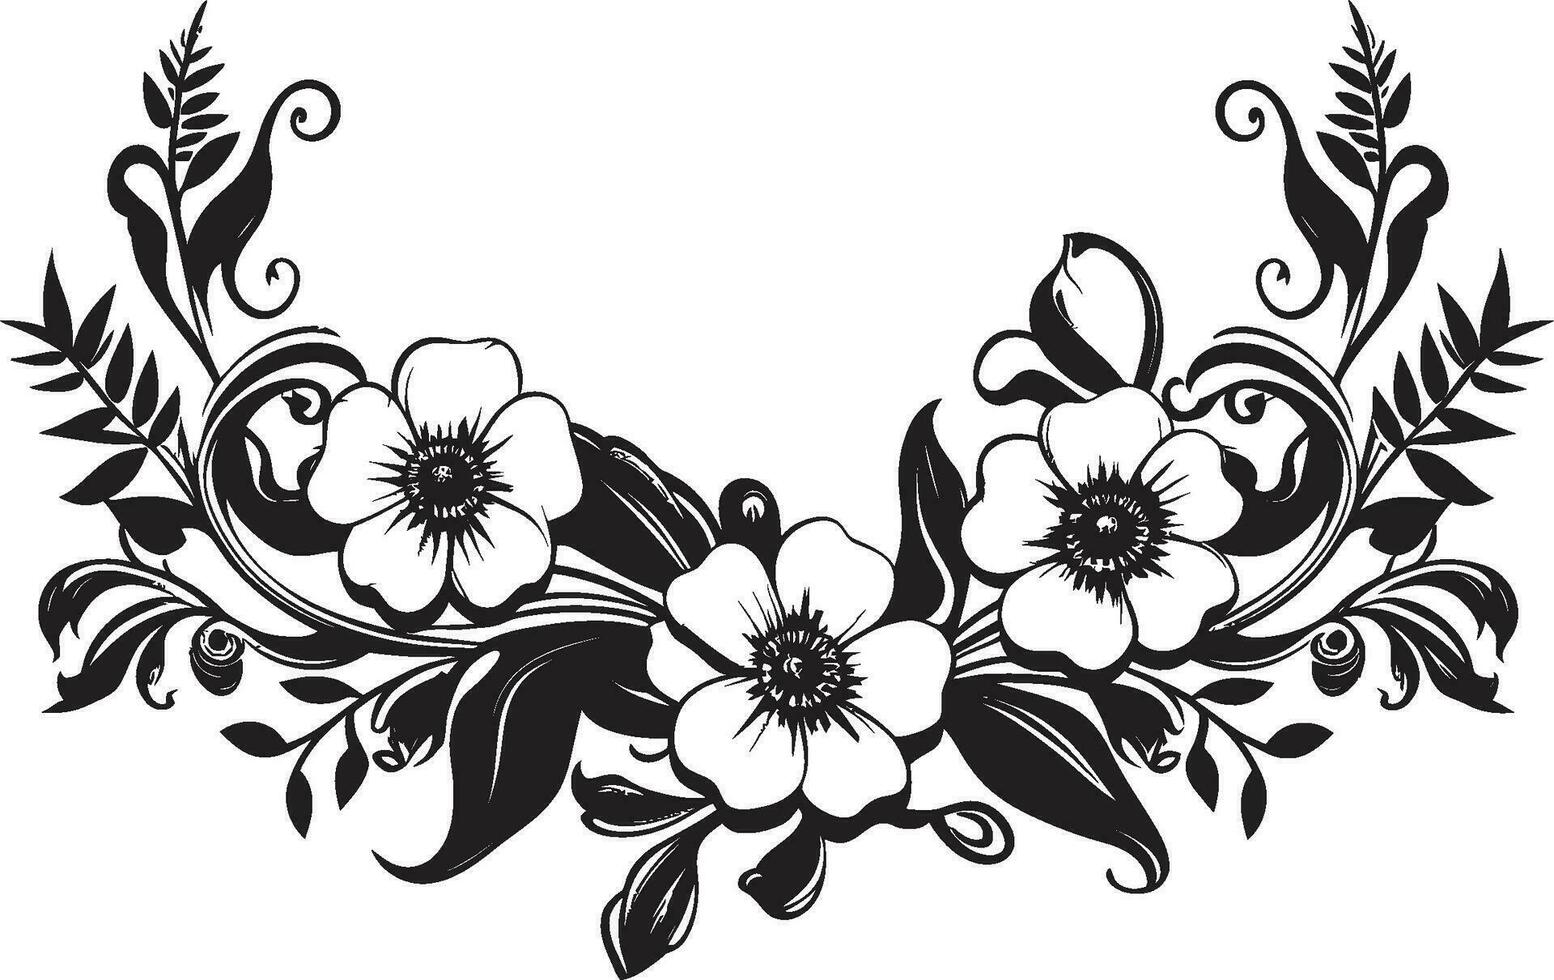 elegante entintado florales noir invitación tarjeta gráficos intrincado floral rollos negro vector icónico adornos